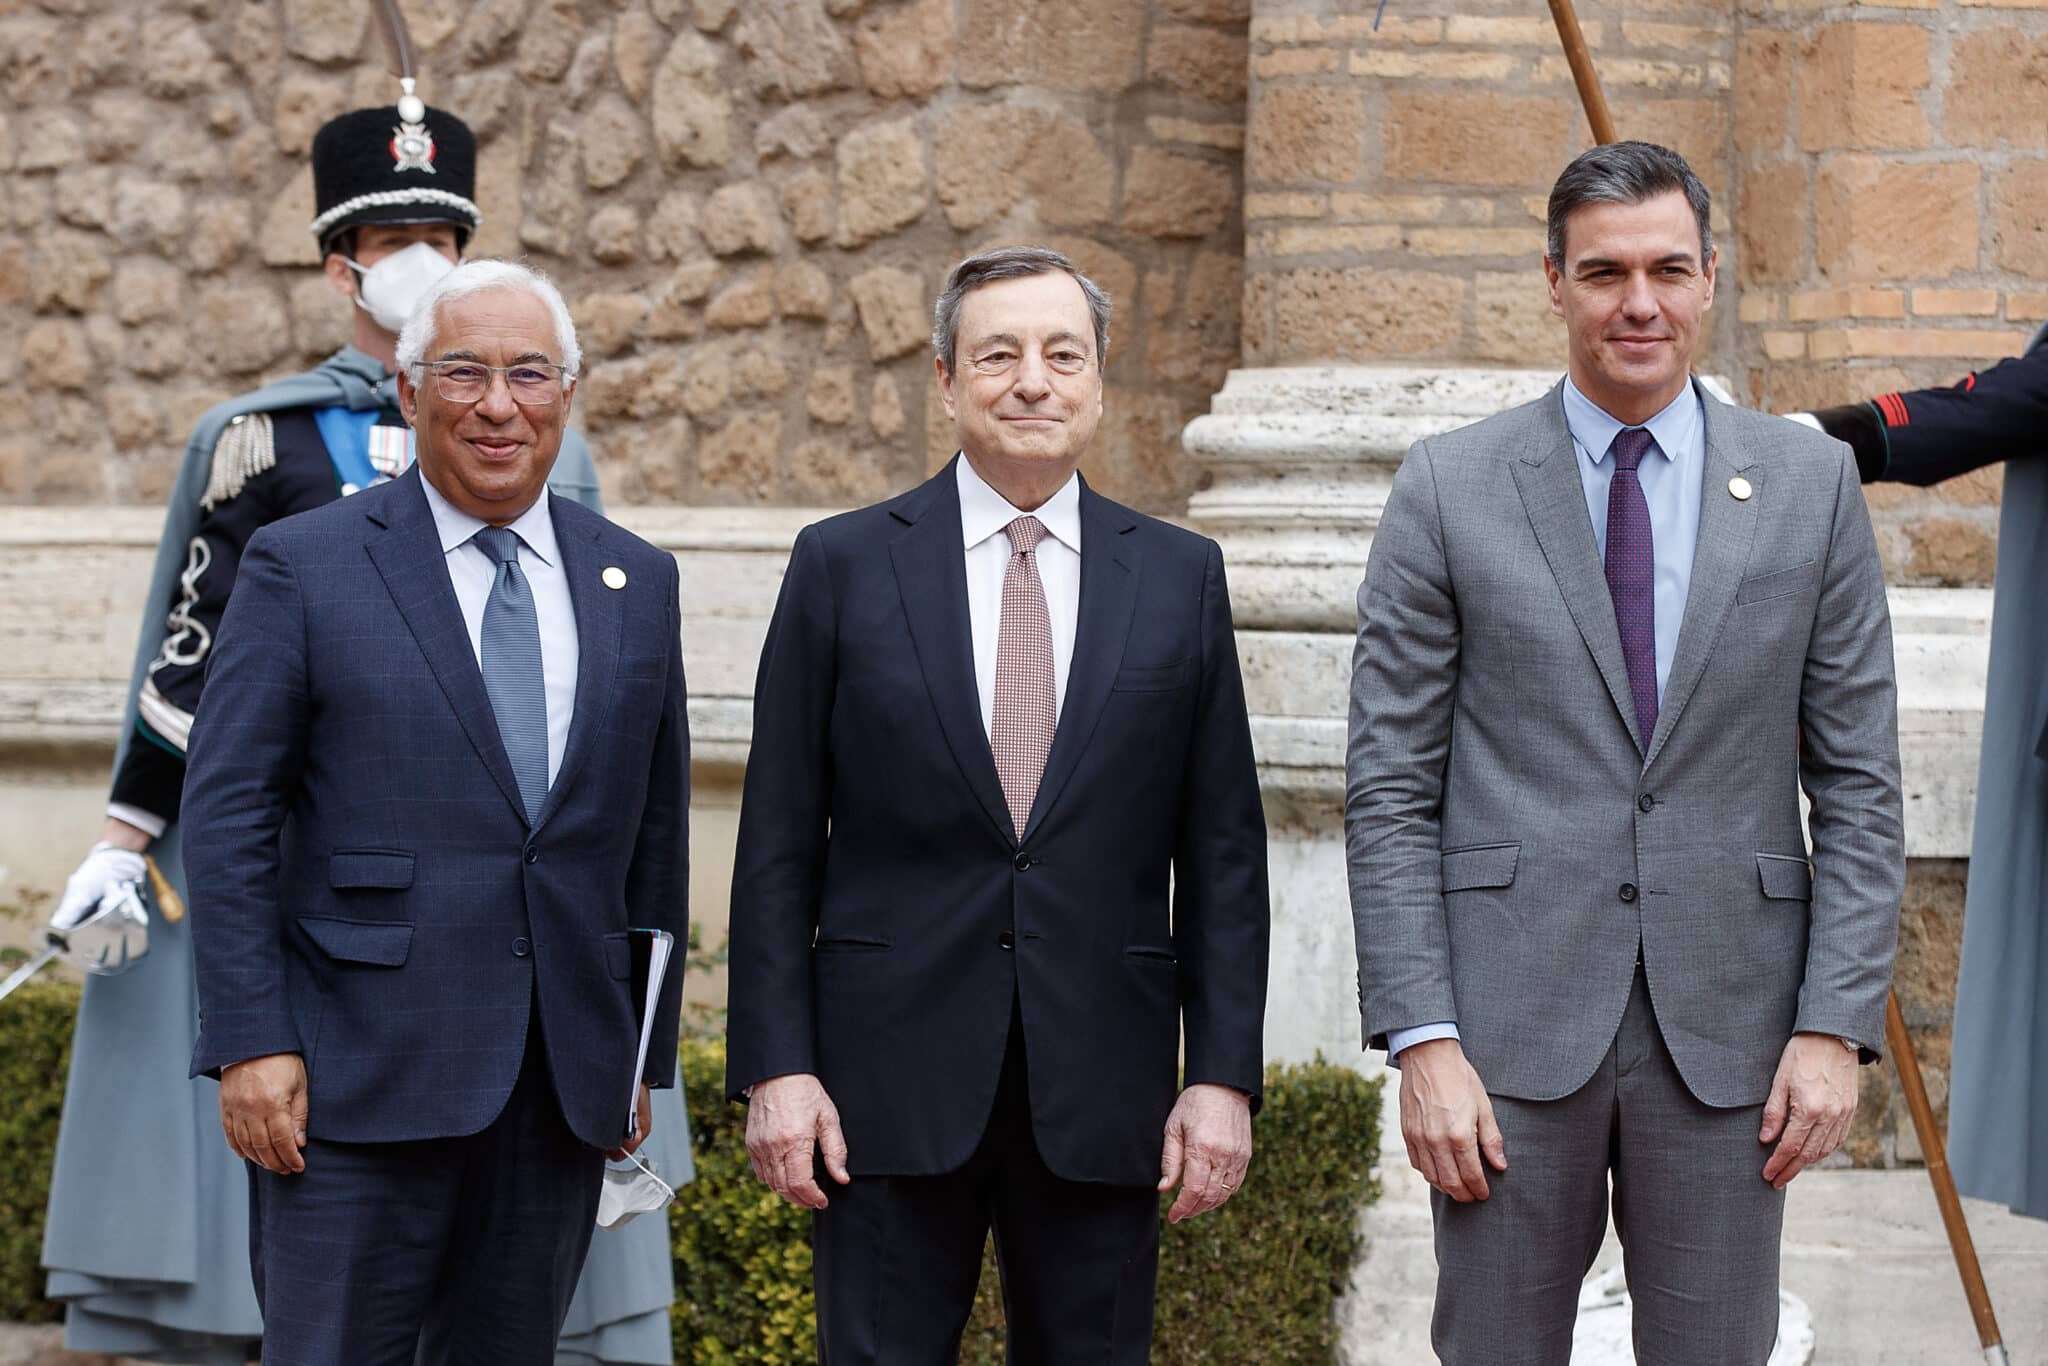 Pedro Sánchez, con los principales líderes de Portugal, Italia y Grecia en el encuentro de Roma para tratar los precios de la energía